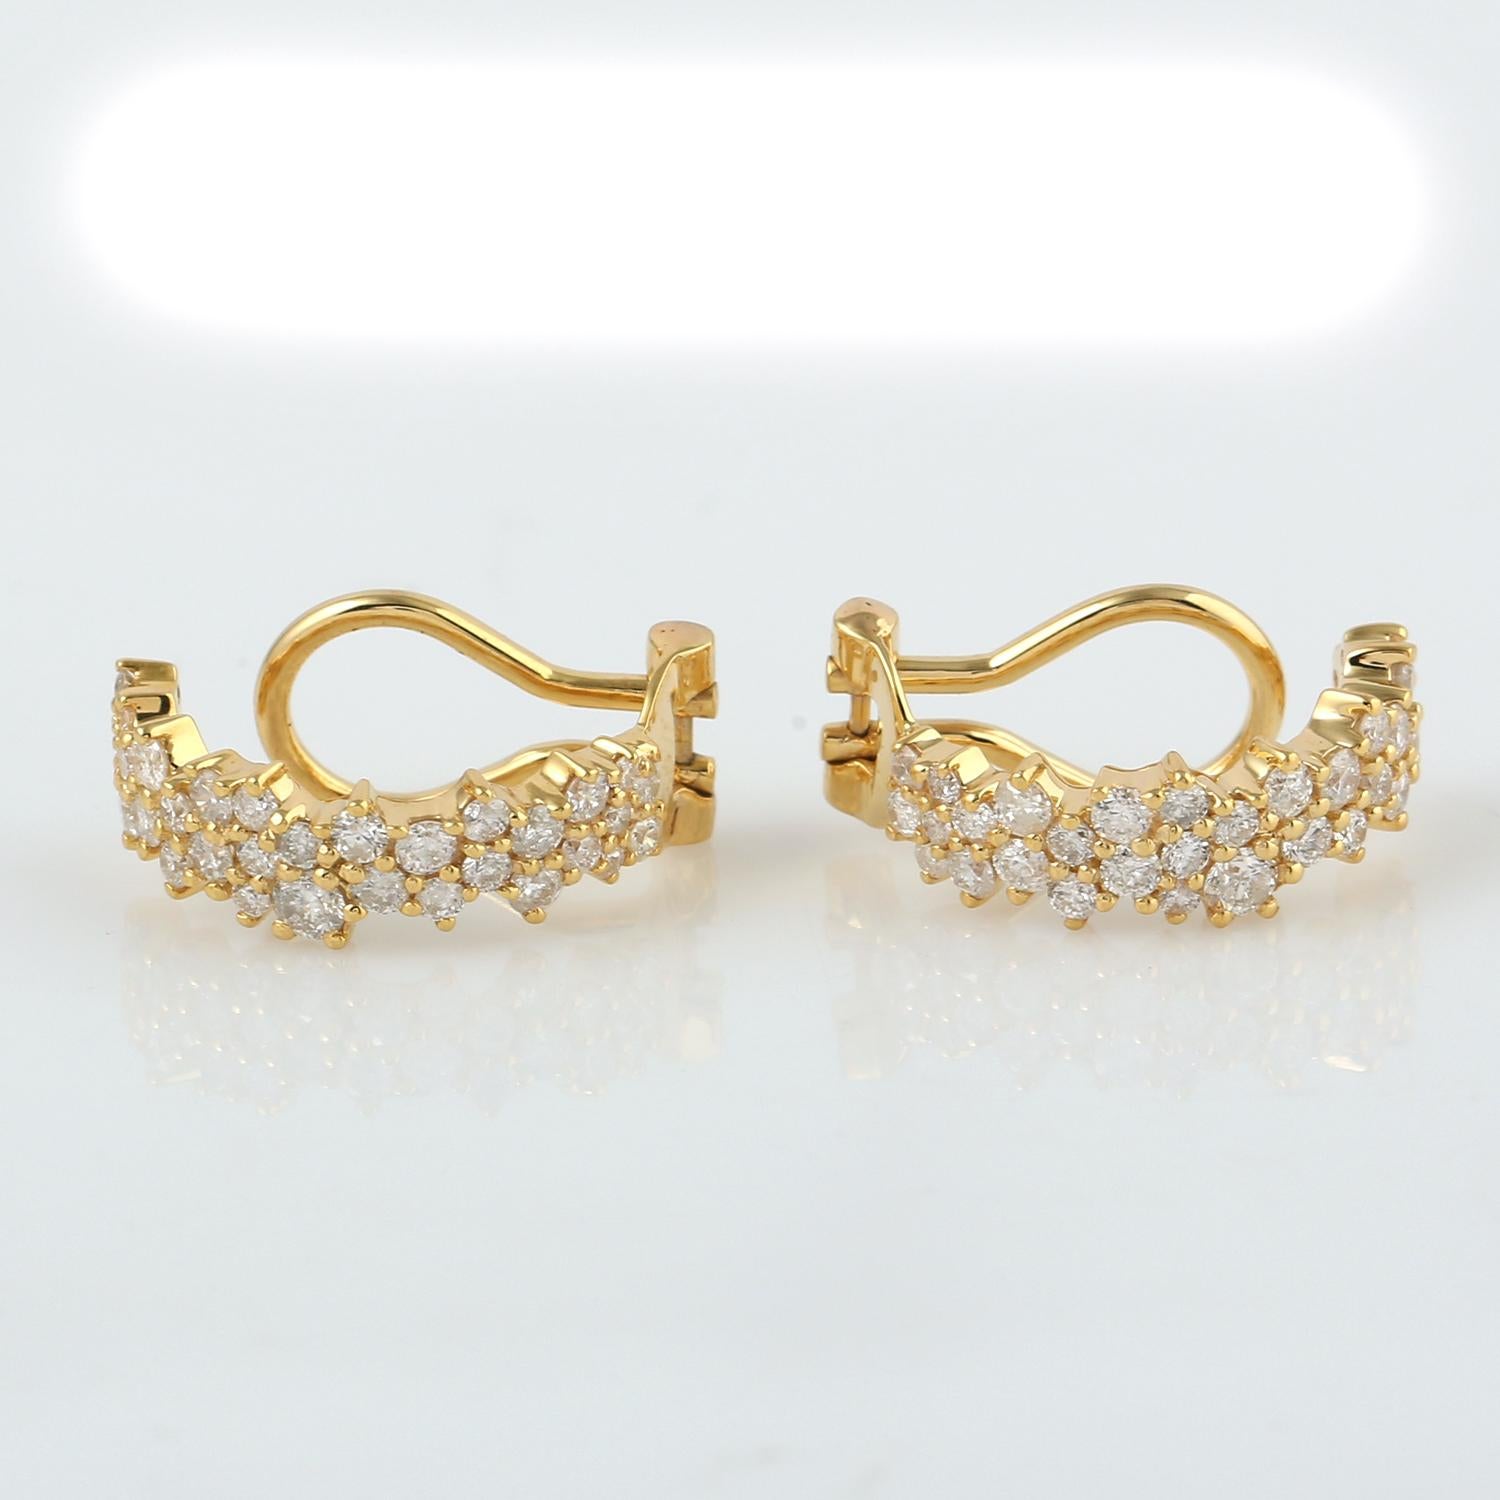 Gegossen in 14 Karat Gold. Diese wunderschönen Ohrringe sind von Hand mit 1,28 Karat funkelnden Diamanten besetzt.

FOLLOW MEGHNA JEWELS Storefront, um die neueste Collection'S und exklusive Stücke zu sehen. Meghna Jewels ist stolz darauf, ein Top